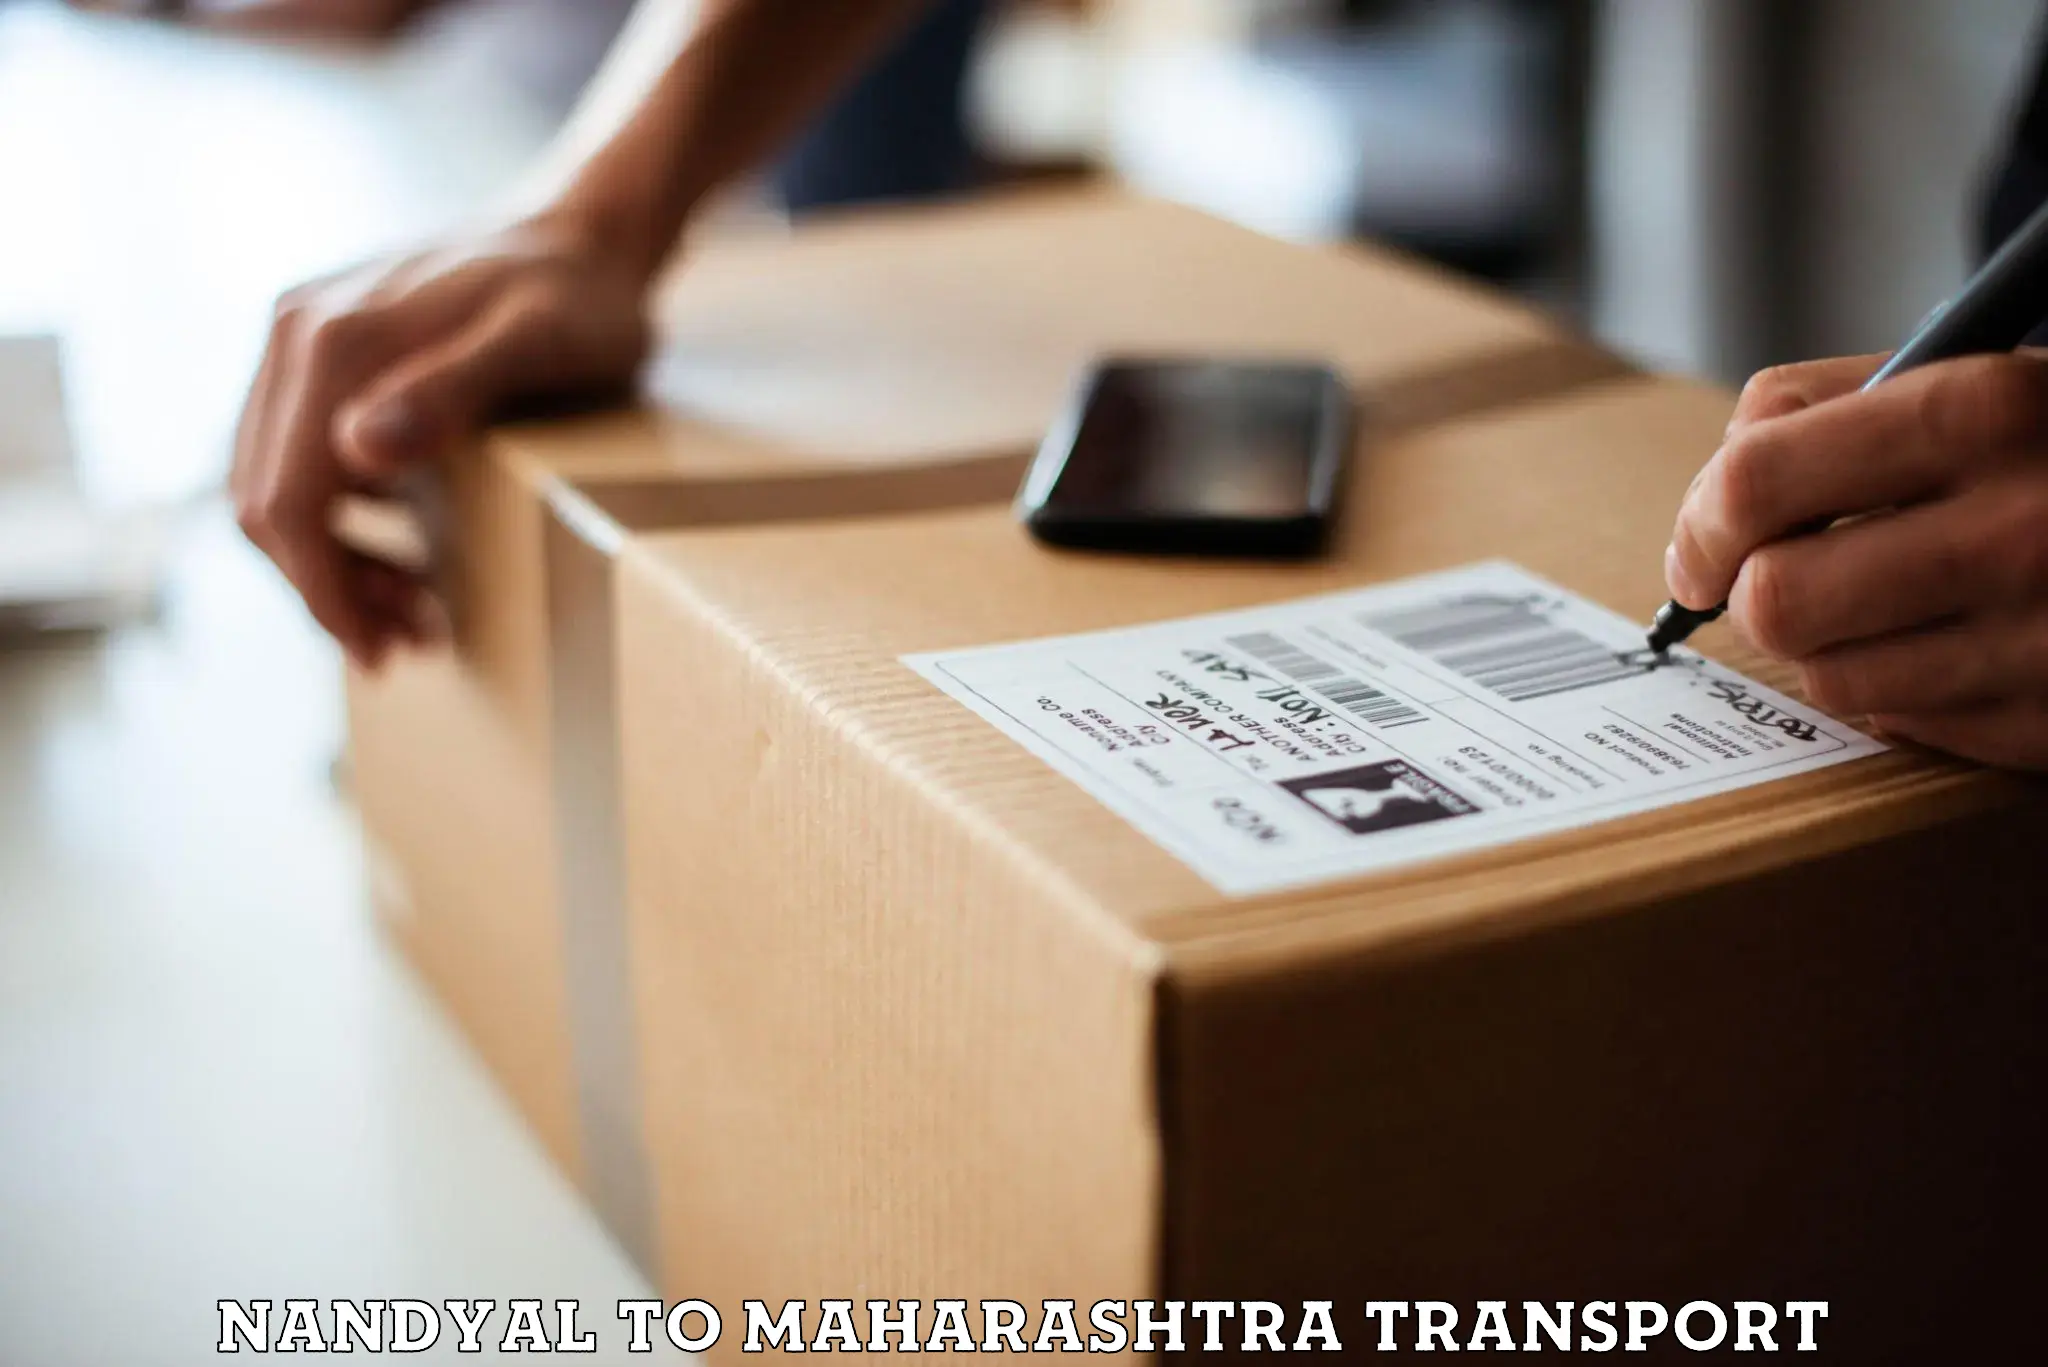 Goods delivery service Nandyal to Lonavala